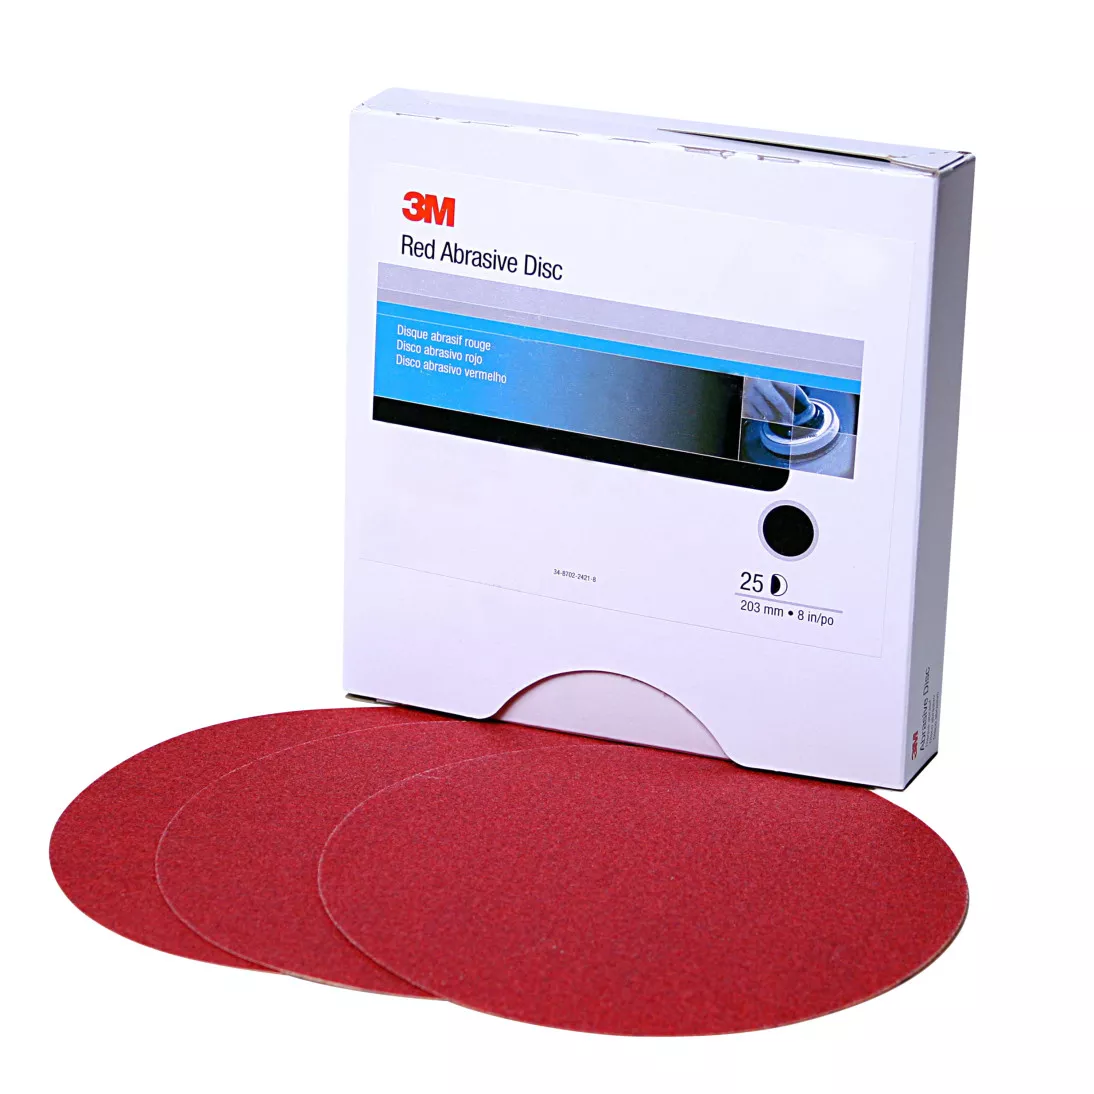 3M™ Red Abrasive Stikit™ Disc, 01107, 6 in, P500 grade, 100 discs per
roll, 6 rolls per case